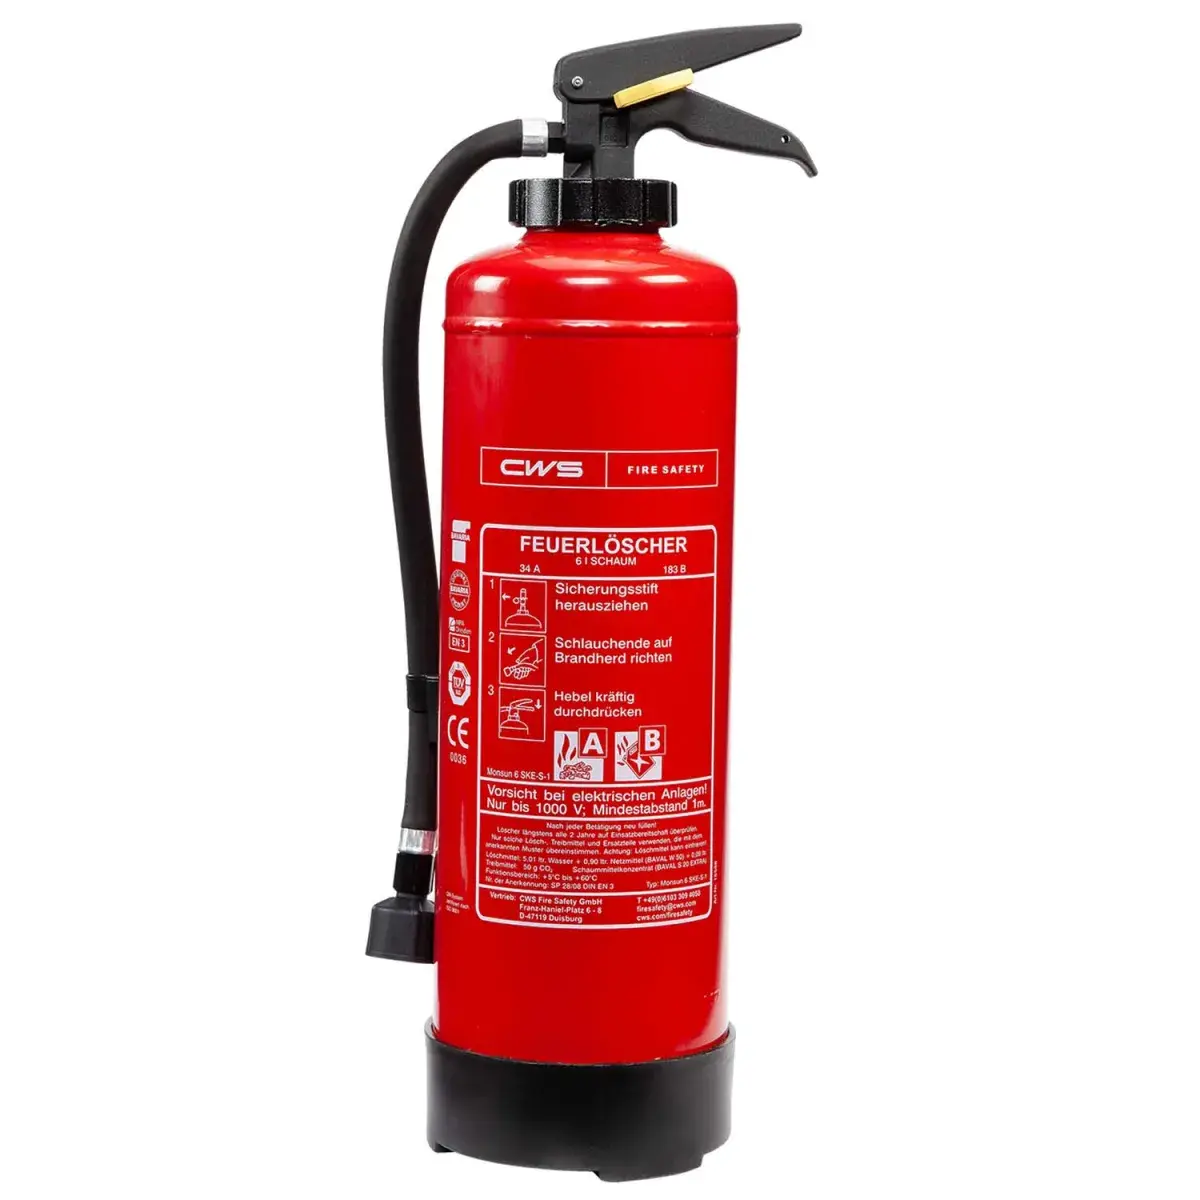 Funktionsweise Feuerlöscher-Kleines Gerät, große Wirkung-CWS Fire Safety